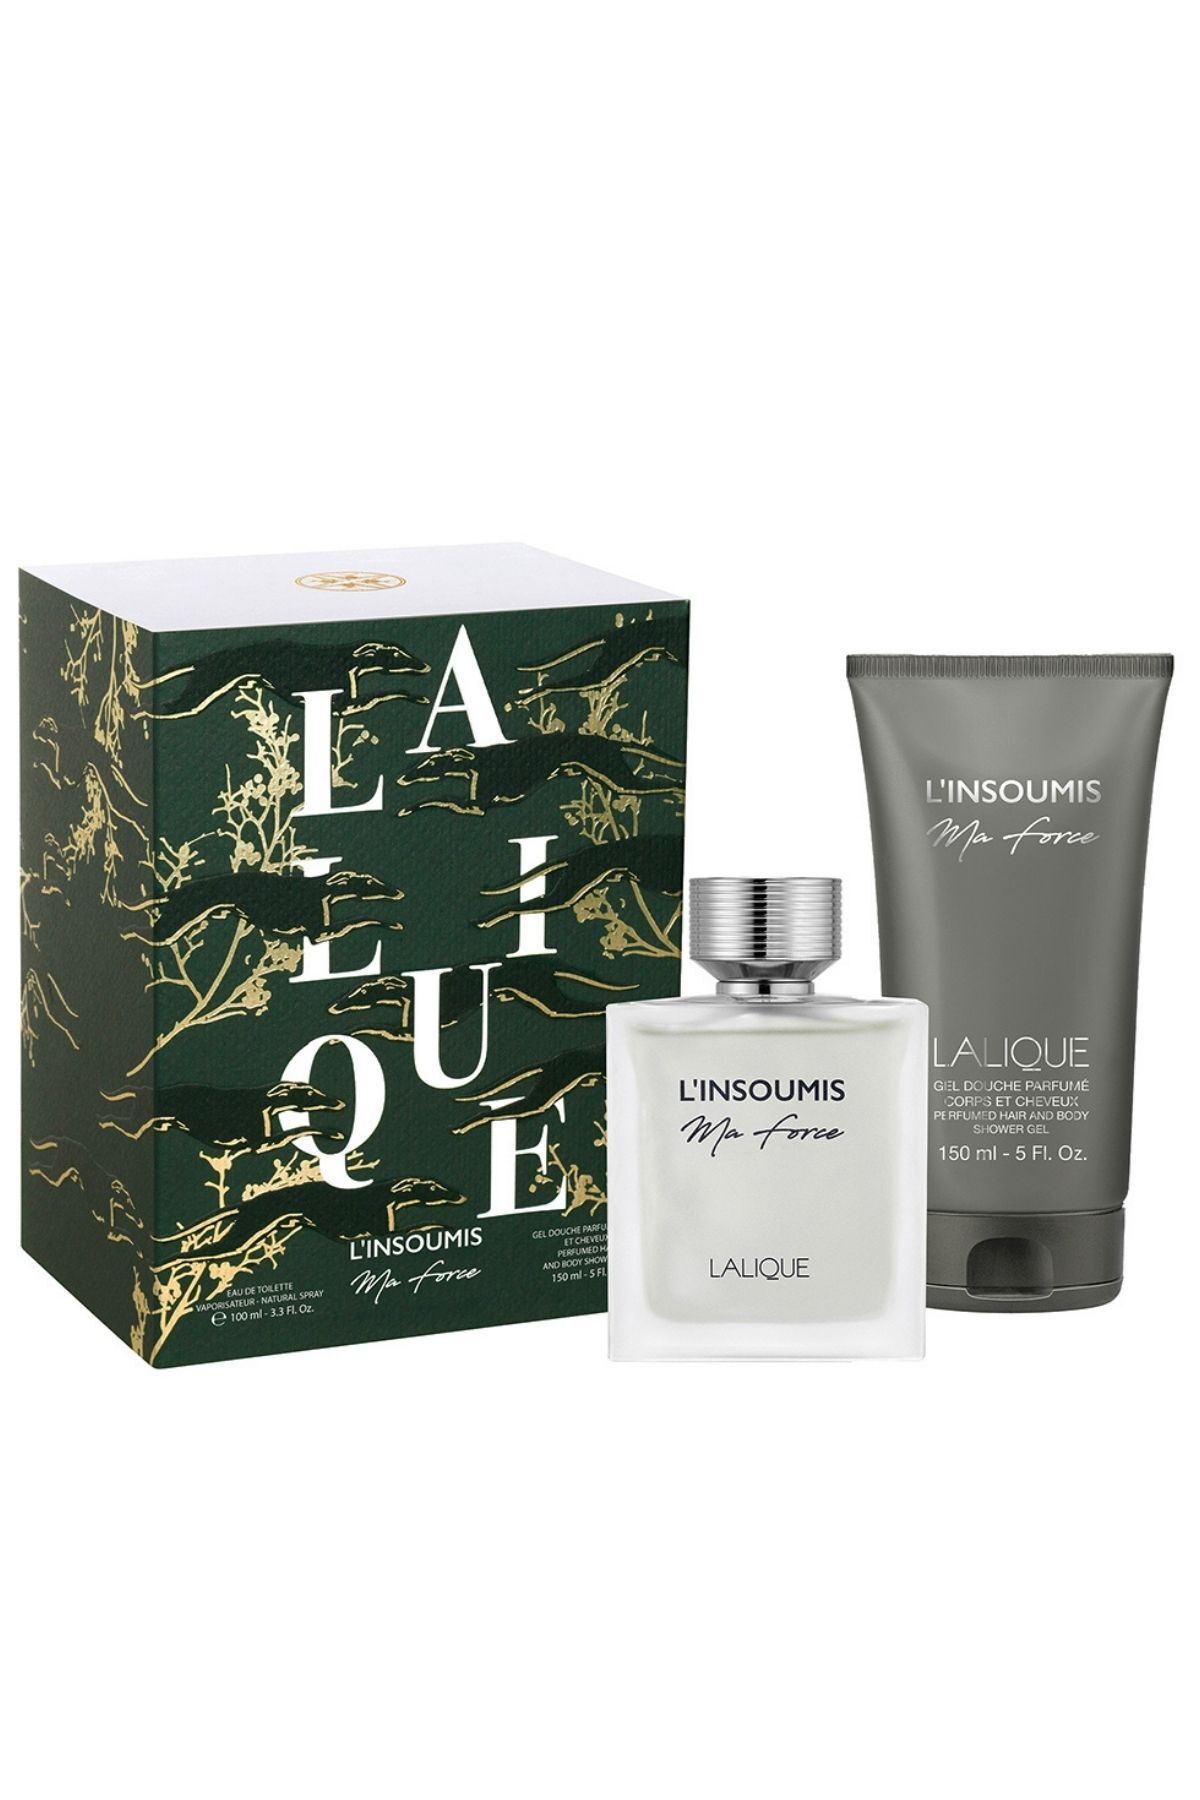 Lalique L'Insoumis Ma Force Edt 100 Ml + Shower Gel 150 Ml